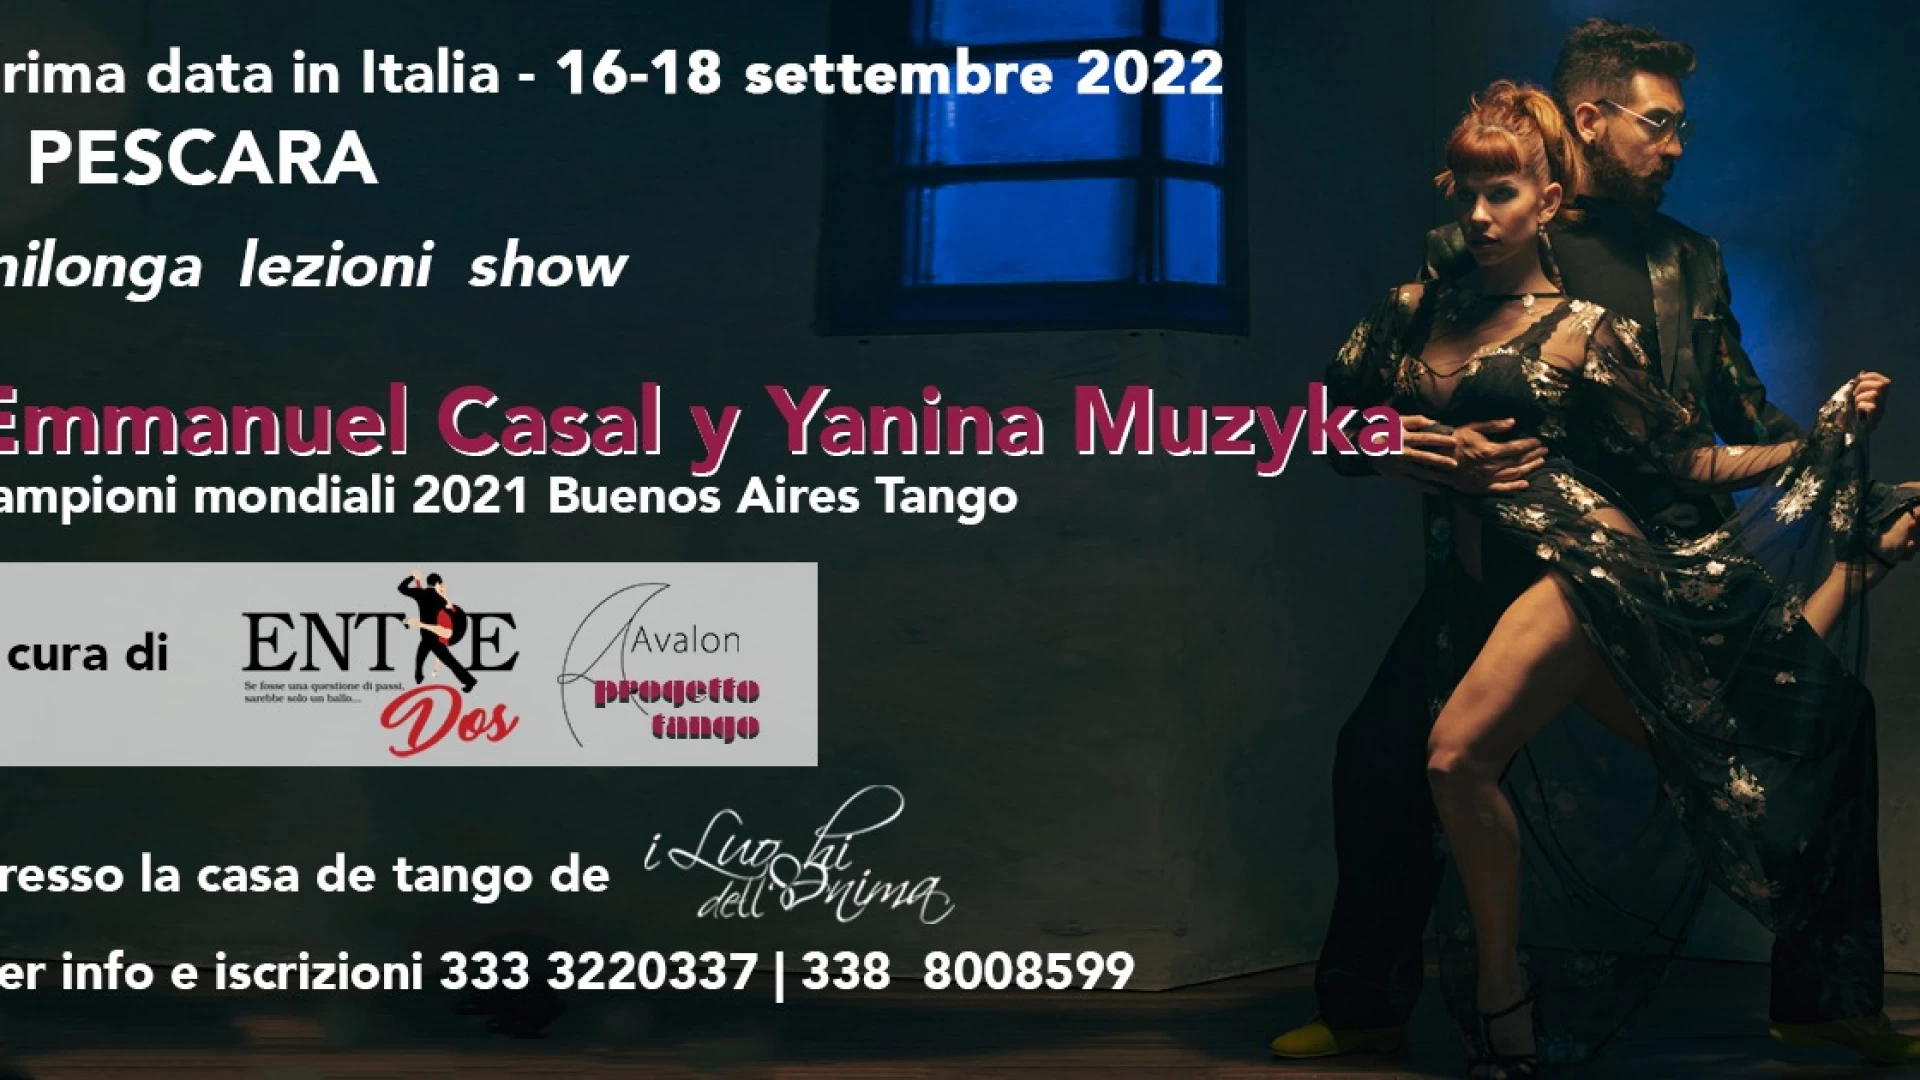 YANINA MUZYKA e EMMANUEL CASAL, i Campioni del Mondo di Tango argentino arrivano a Pescara.